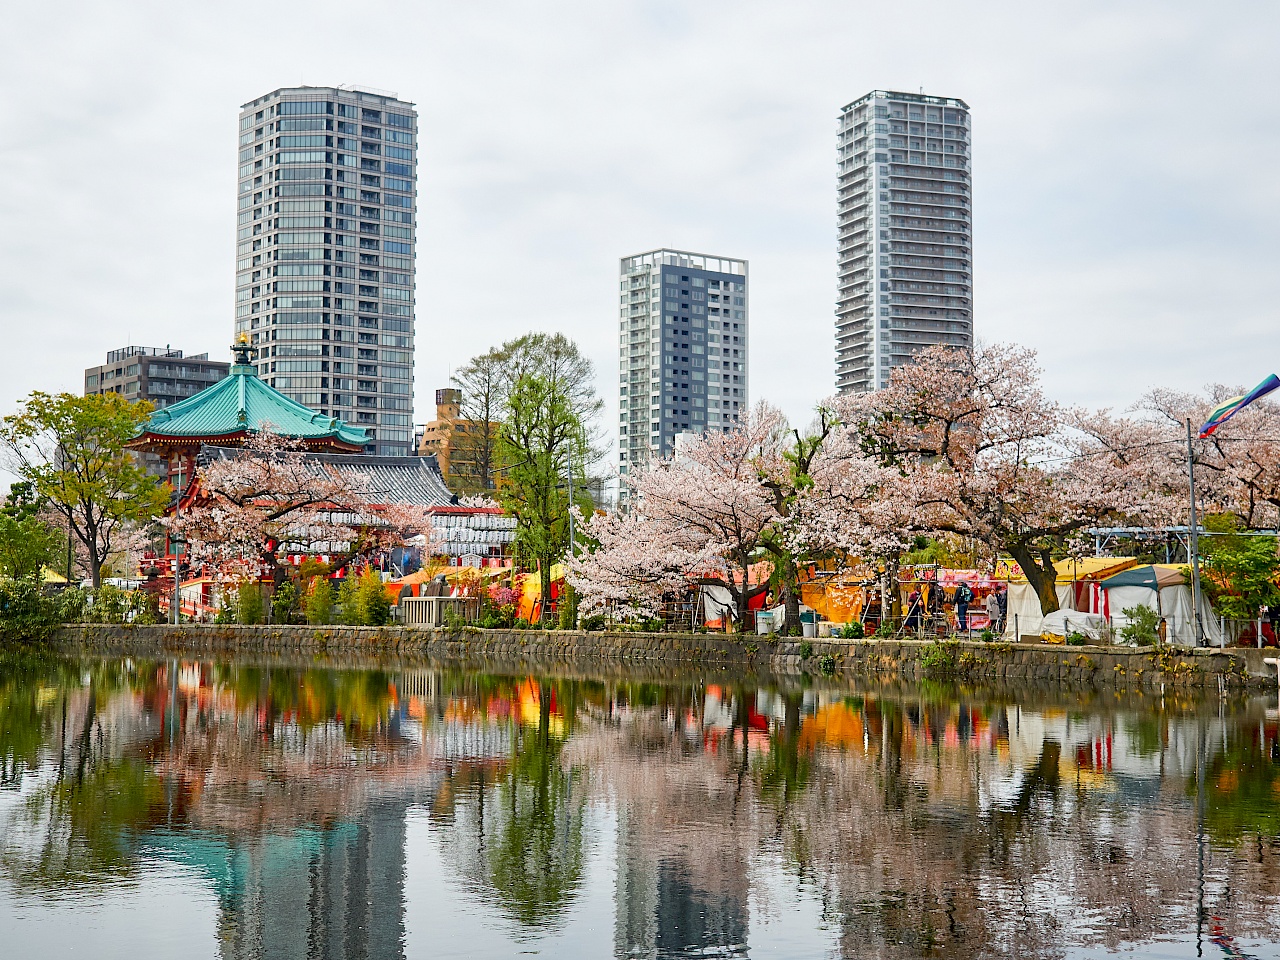 Kirschblüte im Park Ueno-kōen in Tokyo